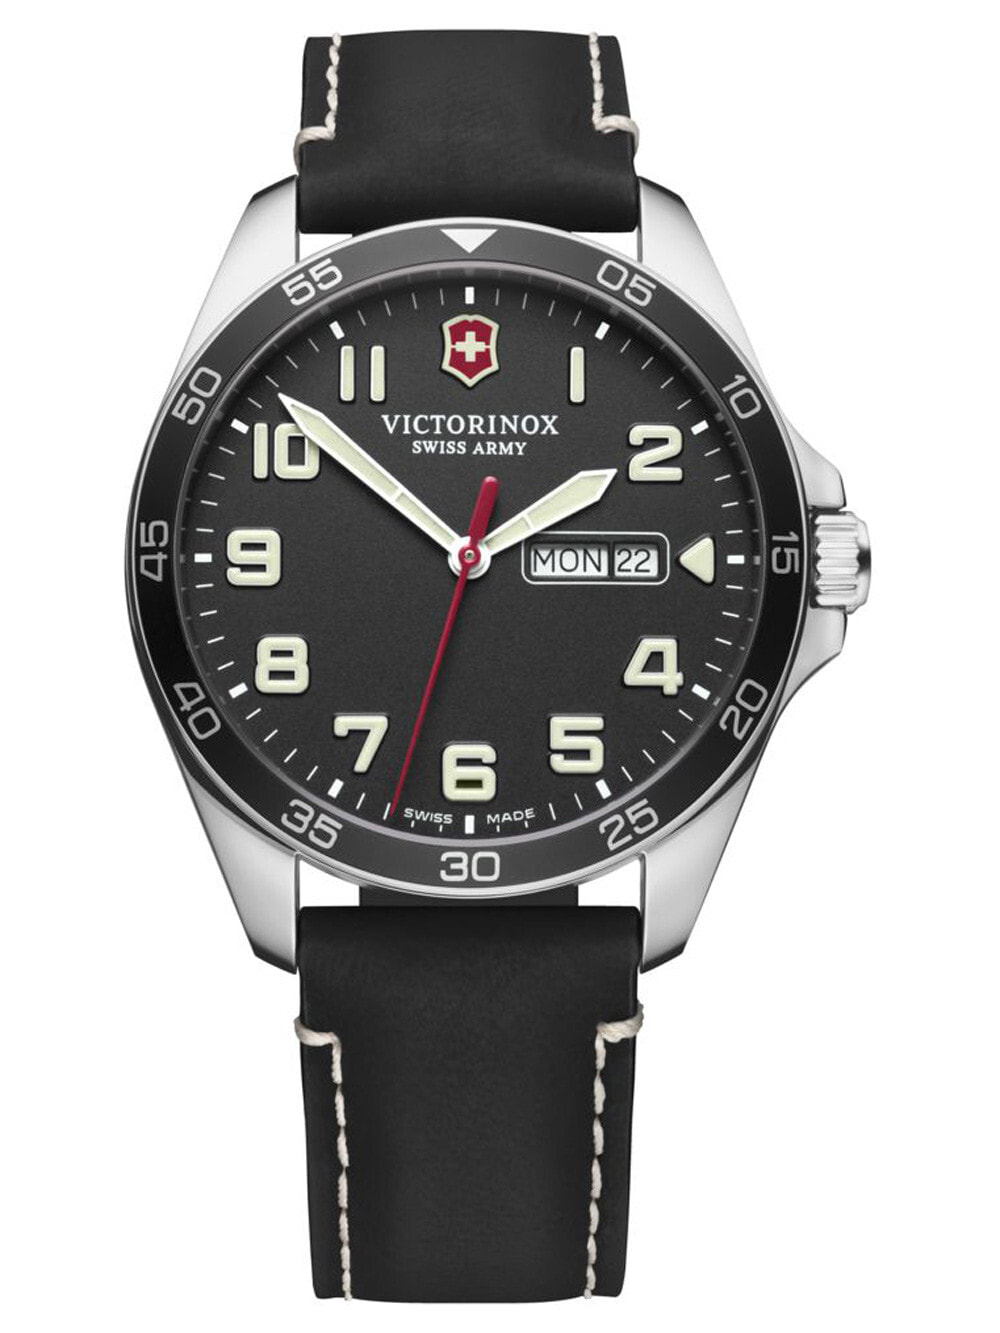 Мужские наручные часы с черным кожаным ремешком Victorinox 241895 Field Force GMT mens 42mm 10ATM